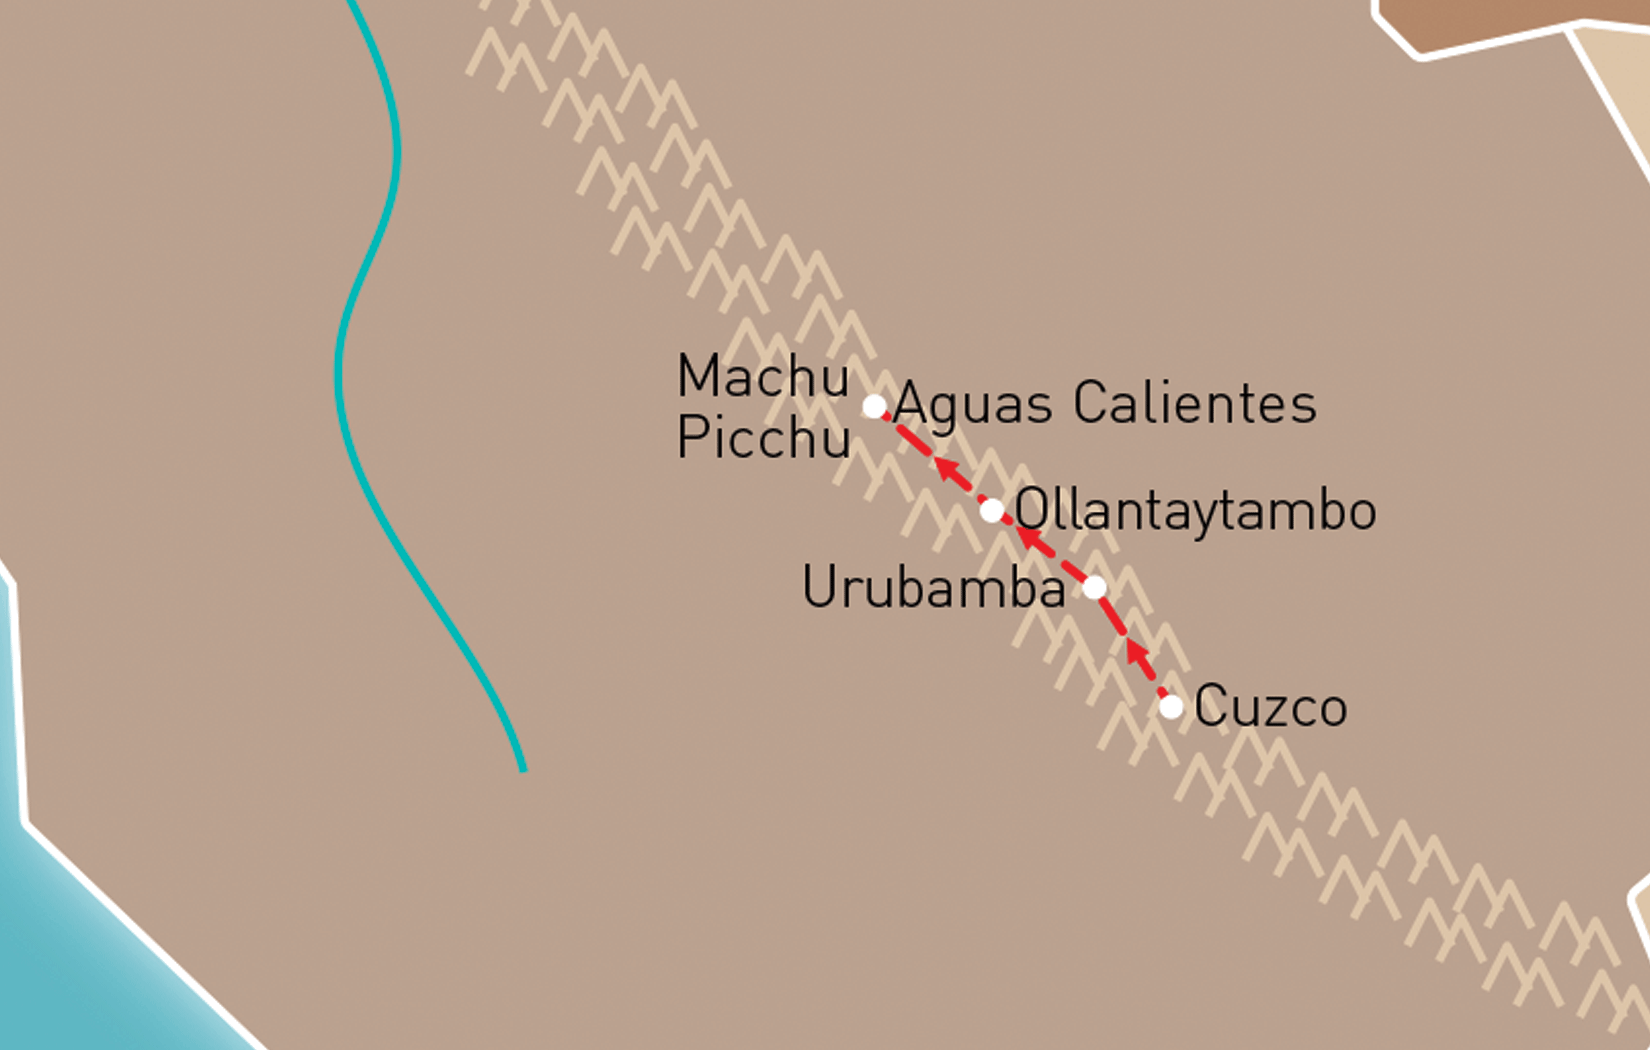 Cuzco & Machu Picchu Route Map